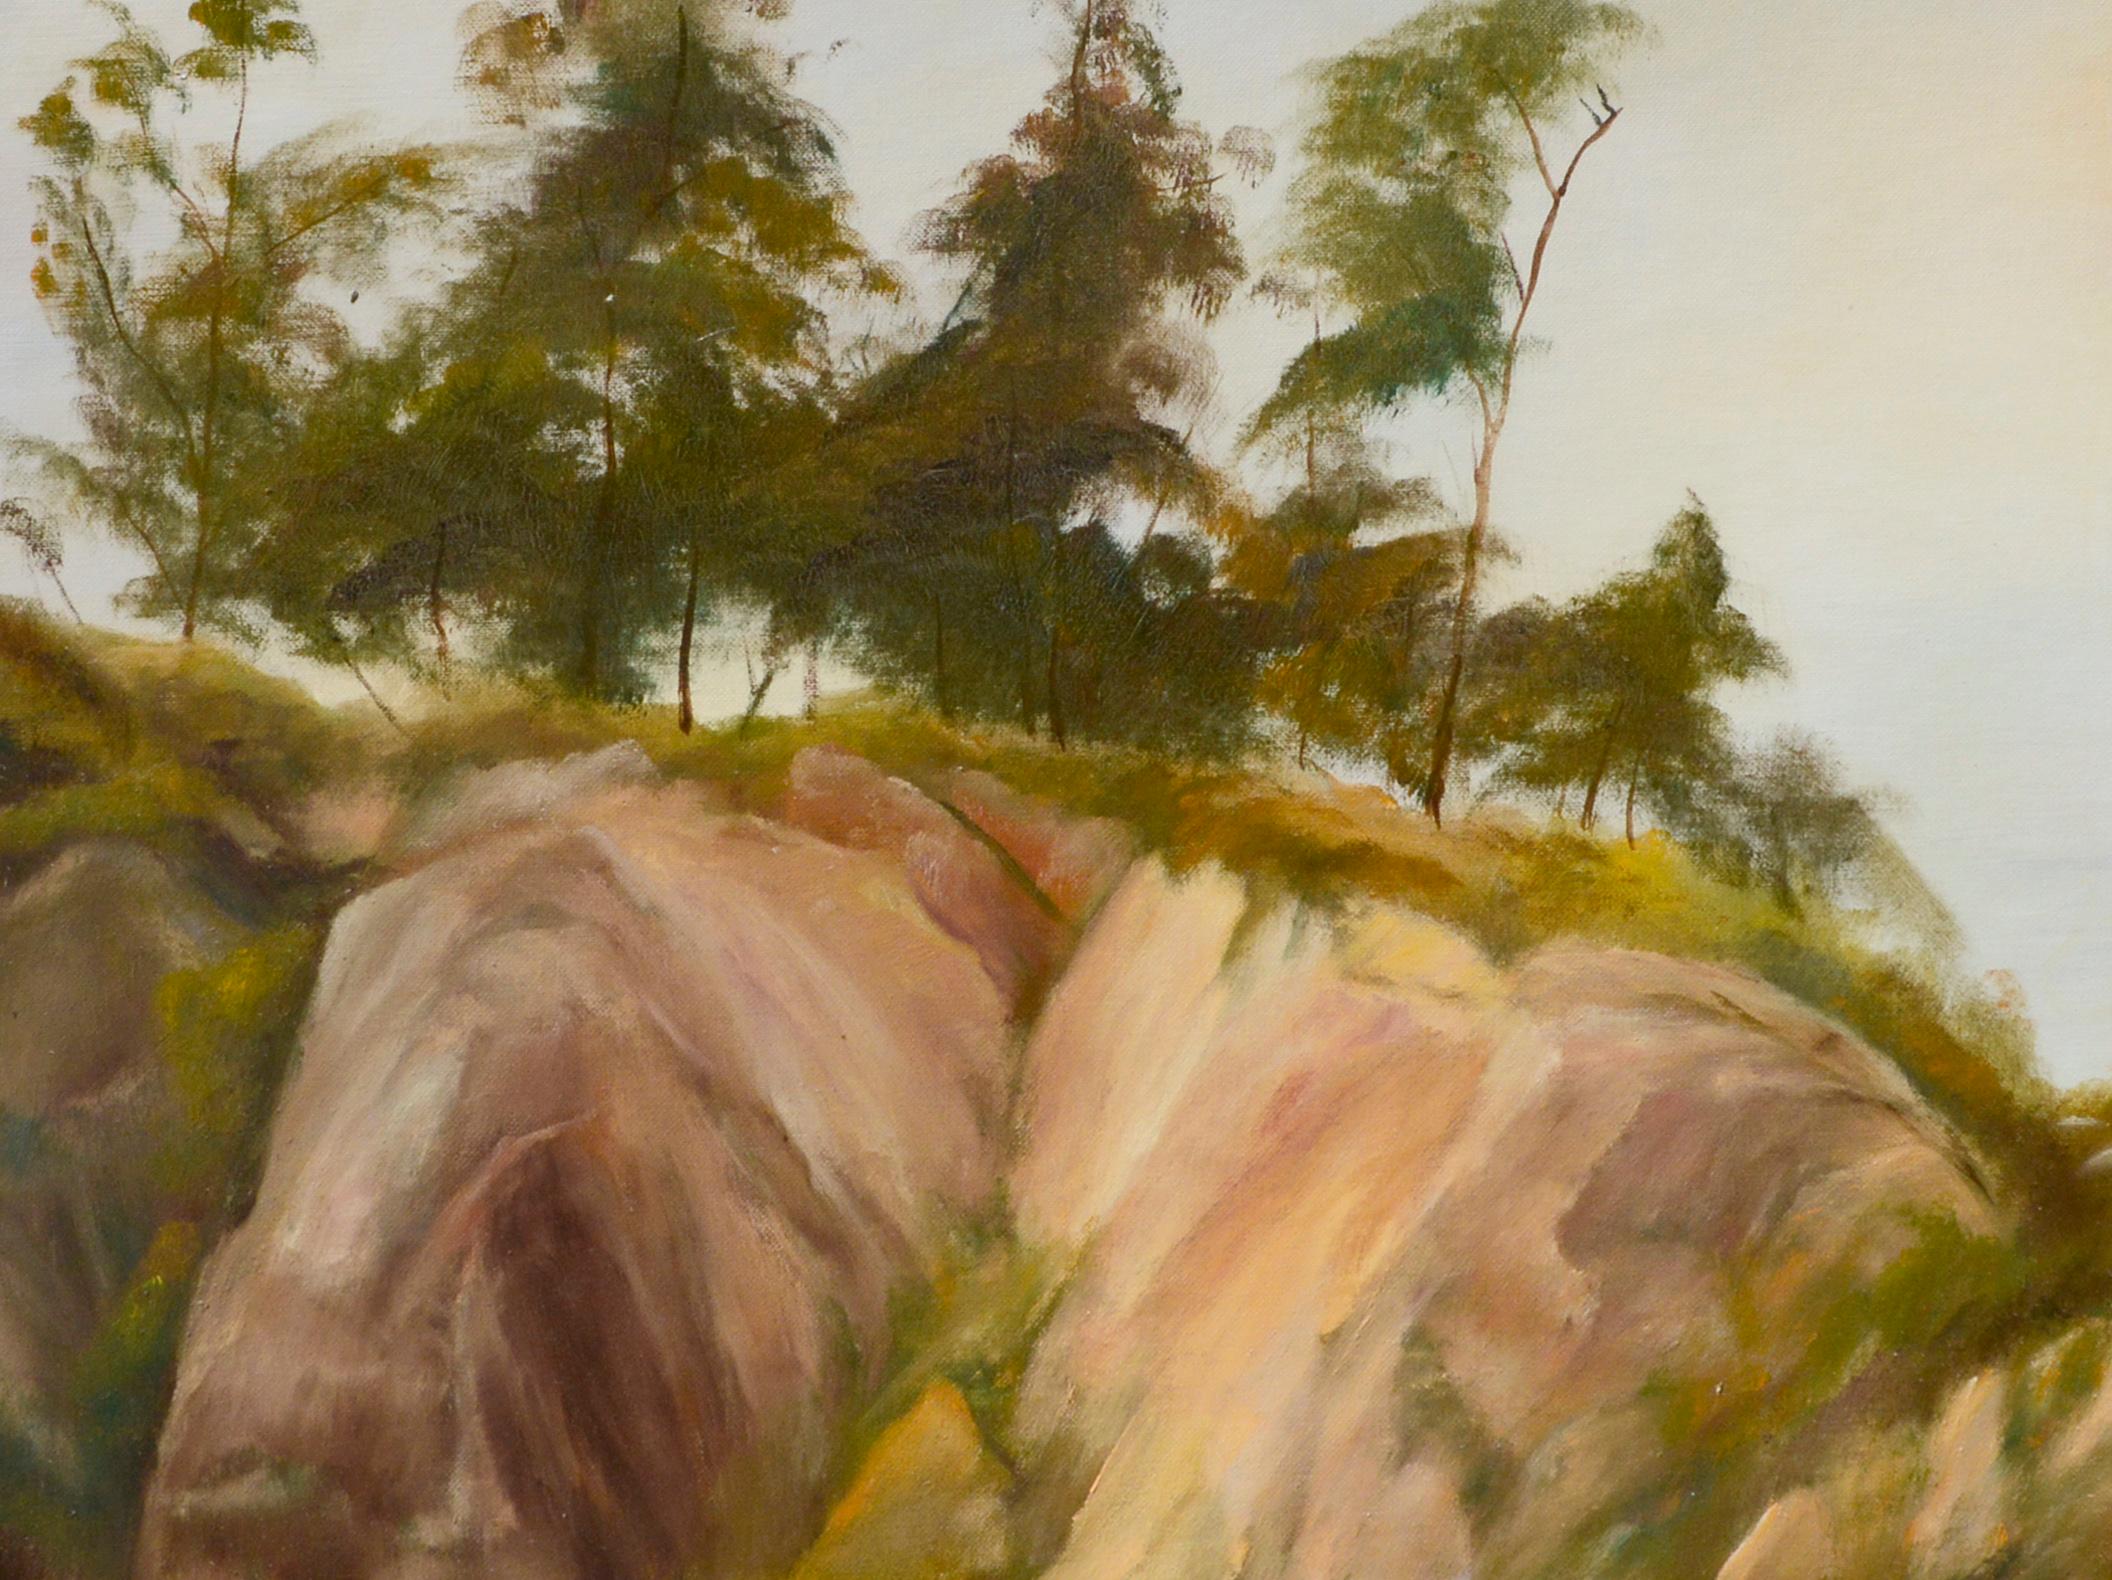 The Trees at the Top of the Big Sur Coastal Bluffs Landscape - Huile sur panneau d'artiste  - Impressionnisme américain Painting par Kenneth Lucas